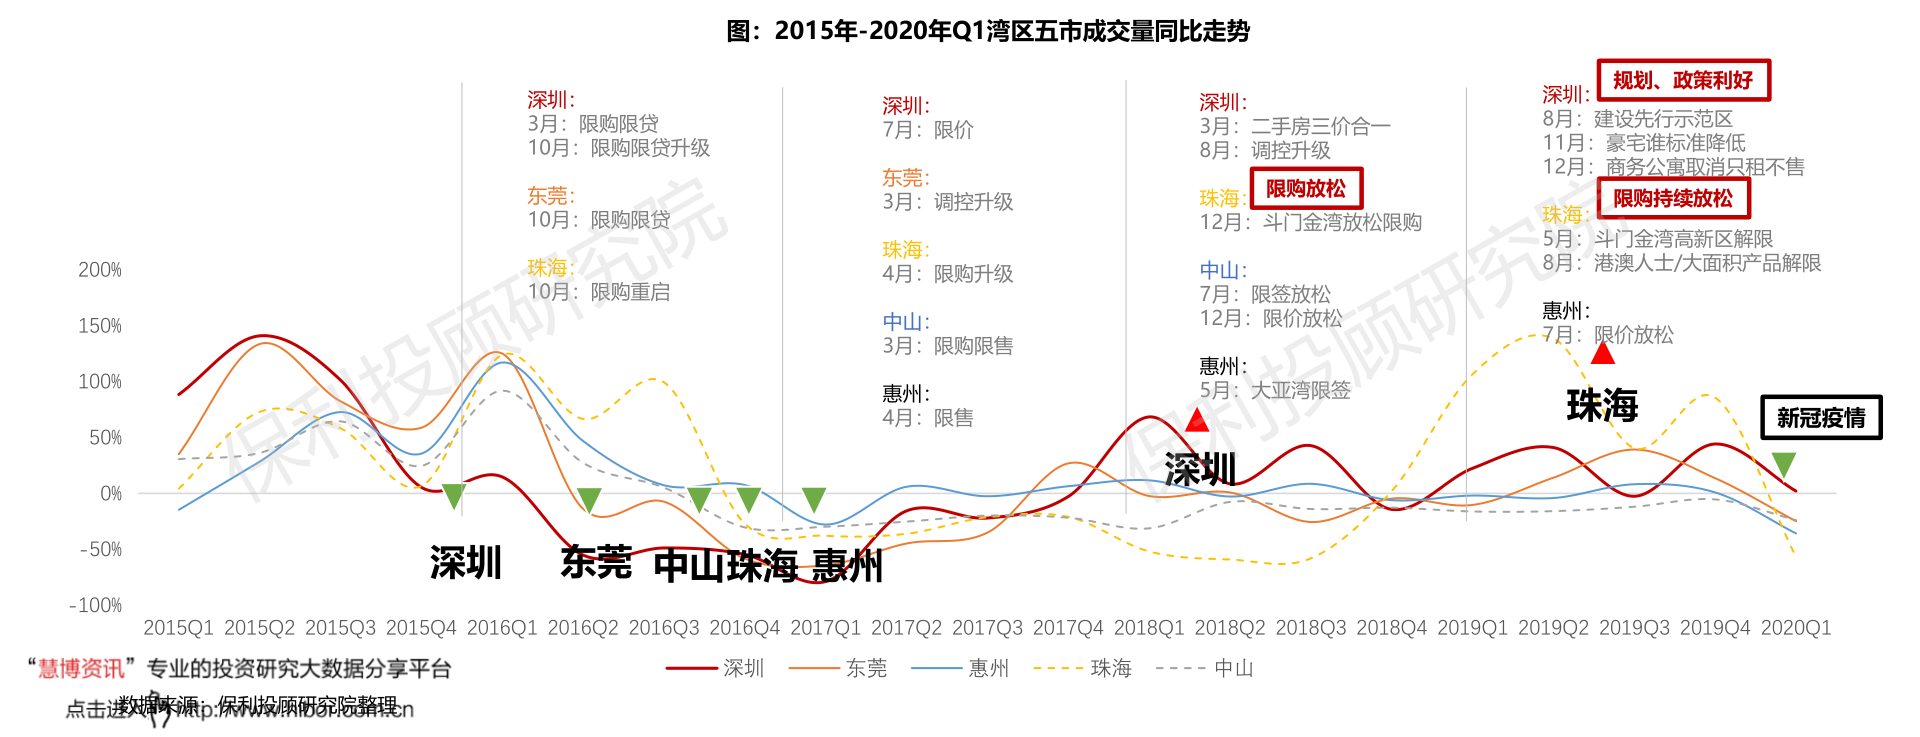 南宫NG28官网中国风机排名前20（中国十大风机企业）(图2)